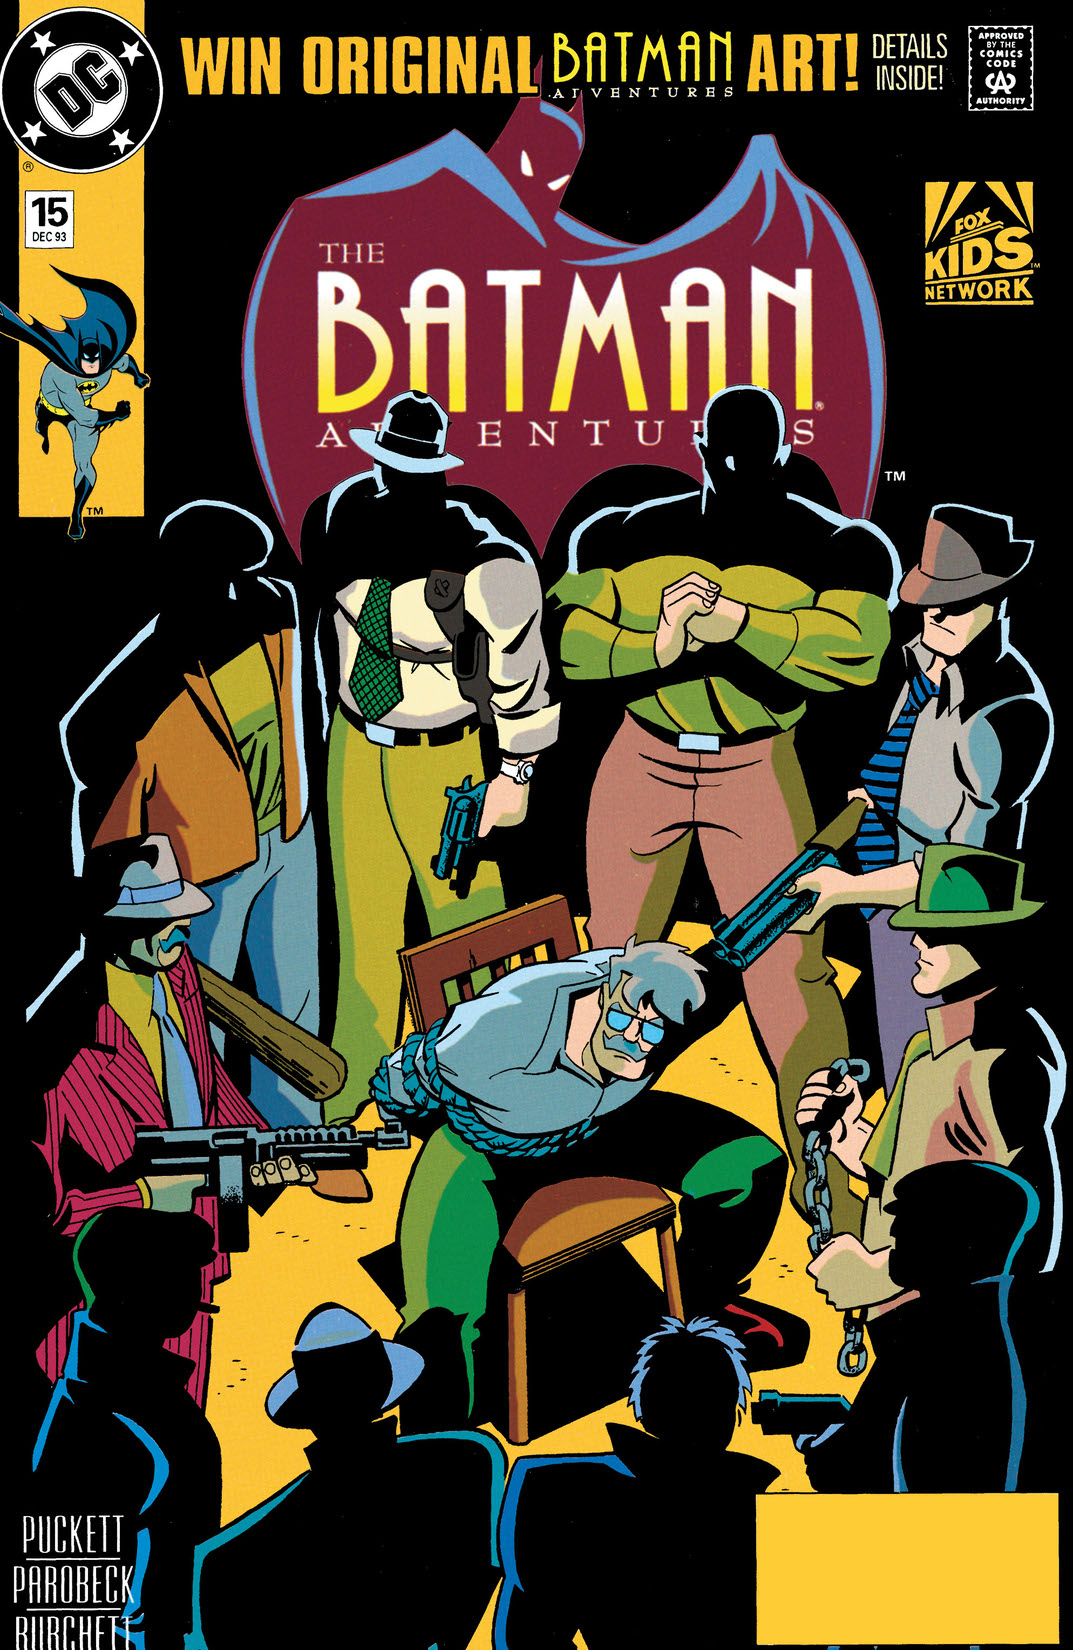 The Batman Adventures #15 preview images